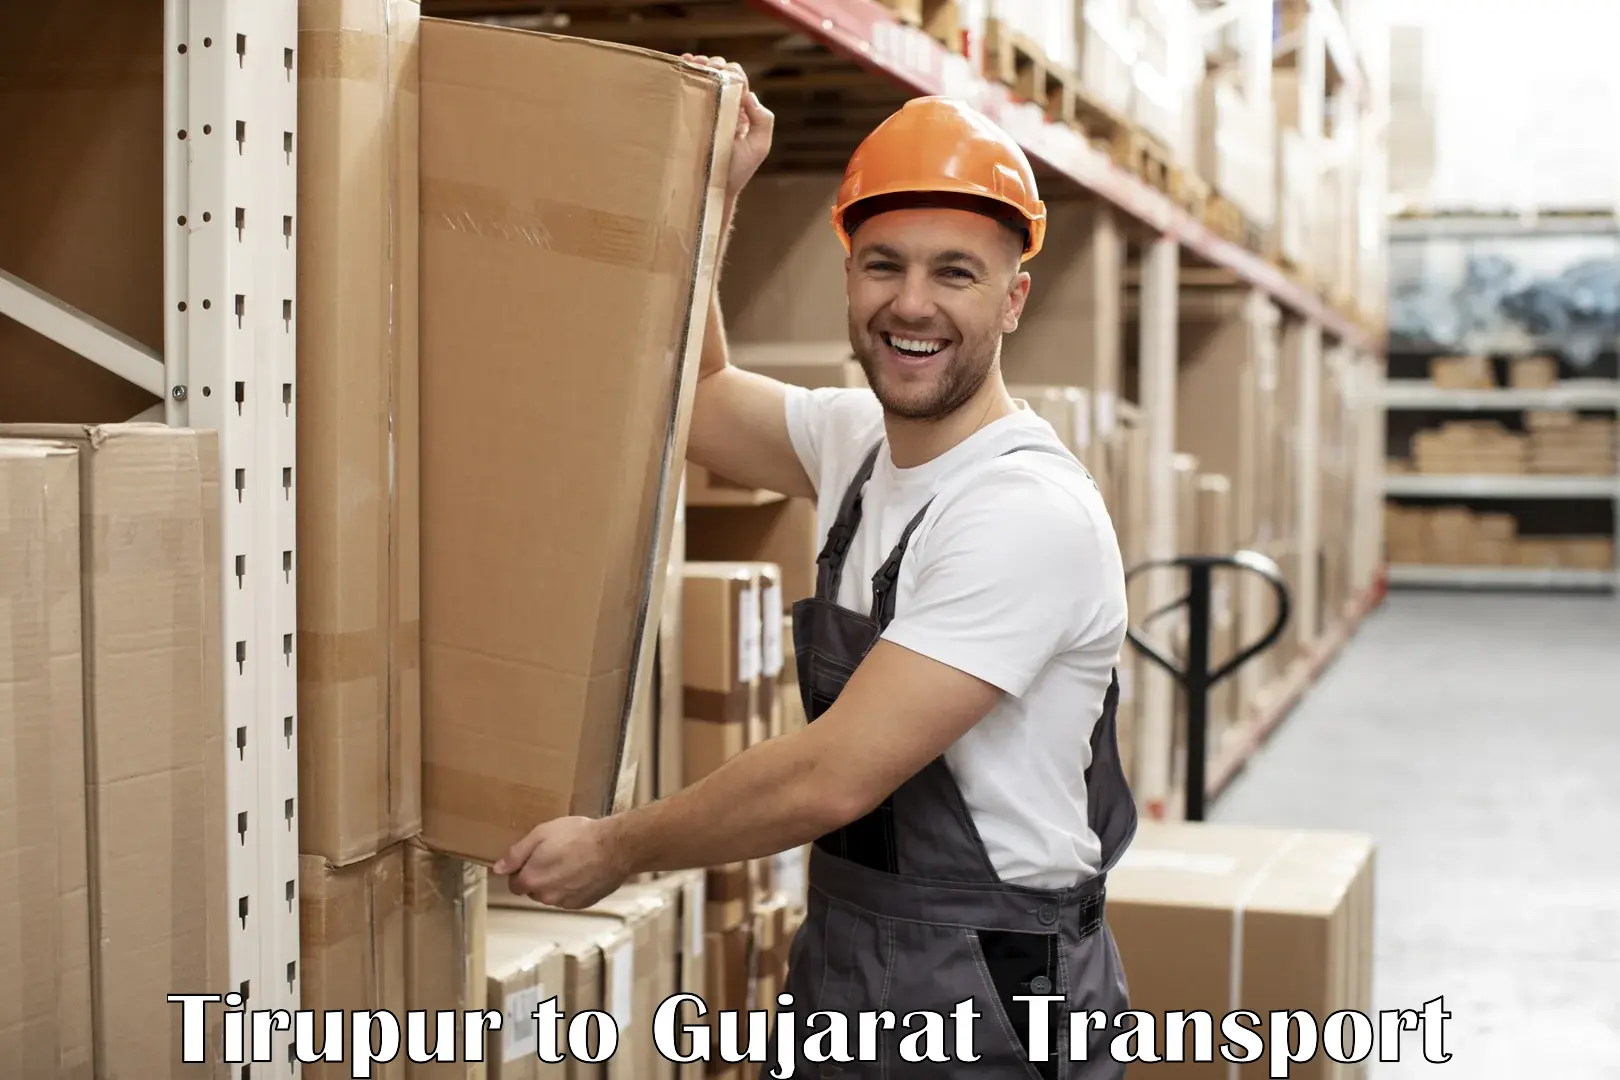 Daily transport service Tirupur to Gujarat